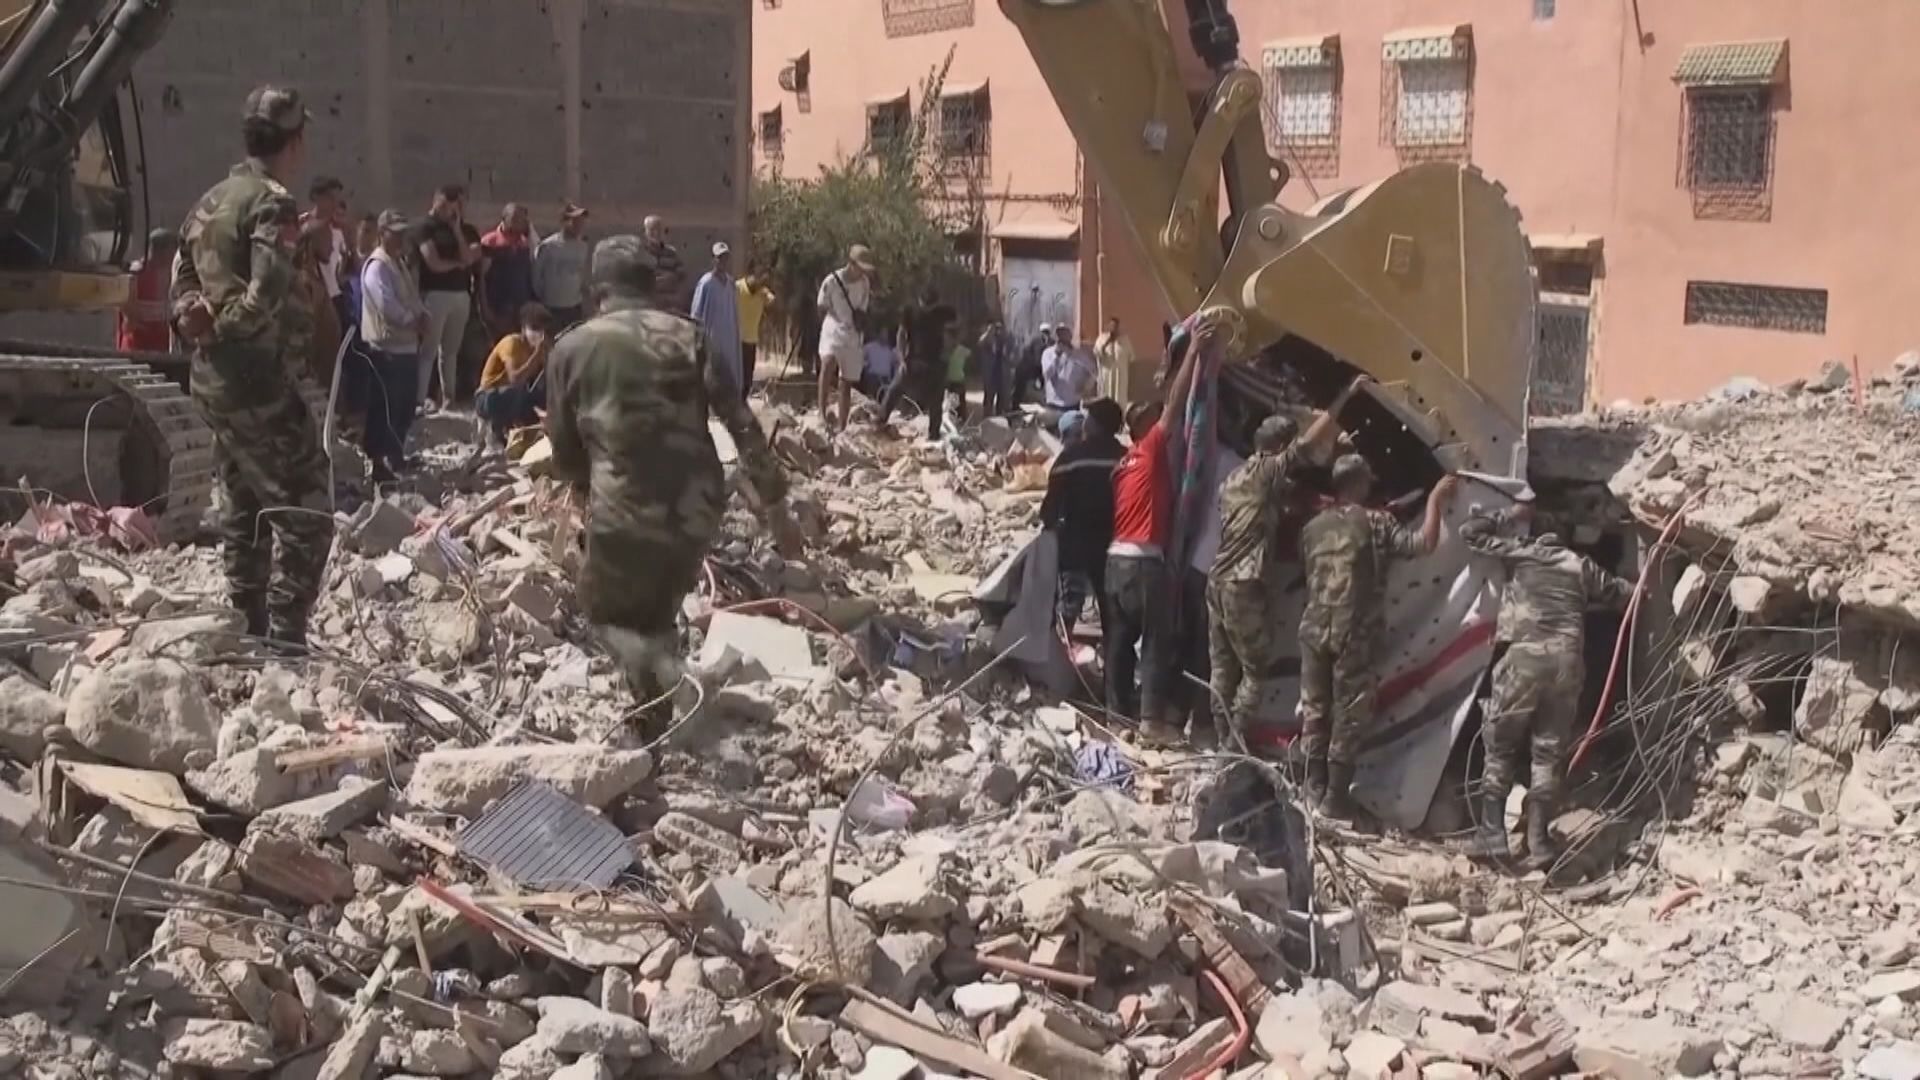 摩洛哥地震增至逾2100人死亡 多國派出搜救隊協助搜救